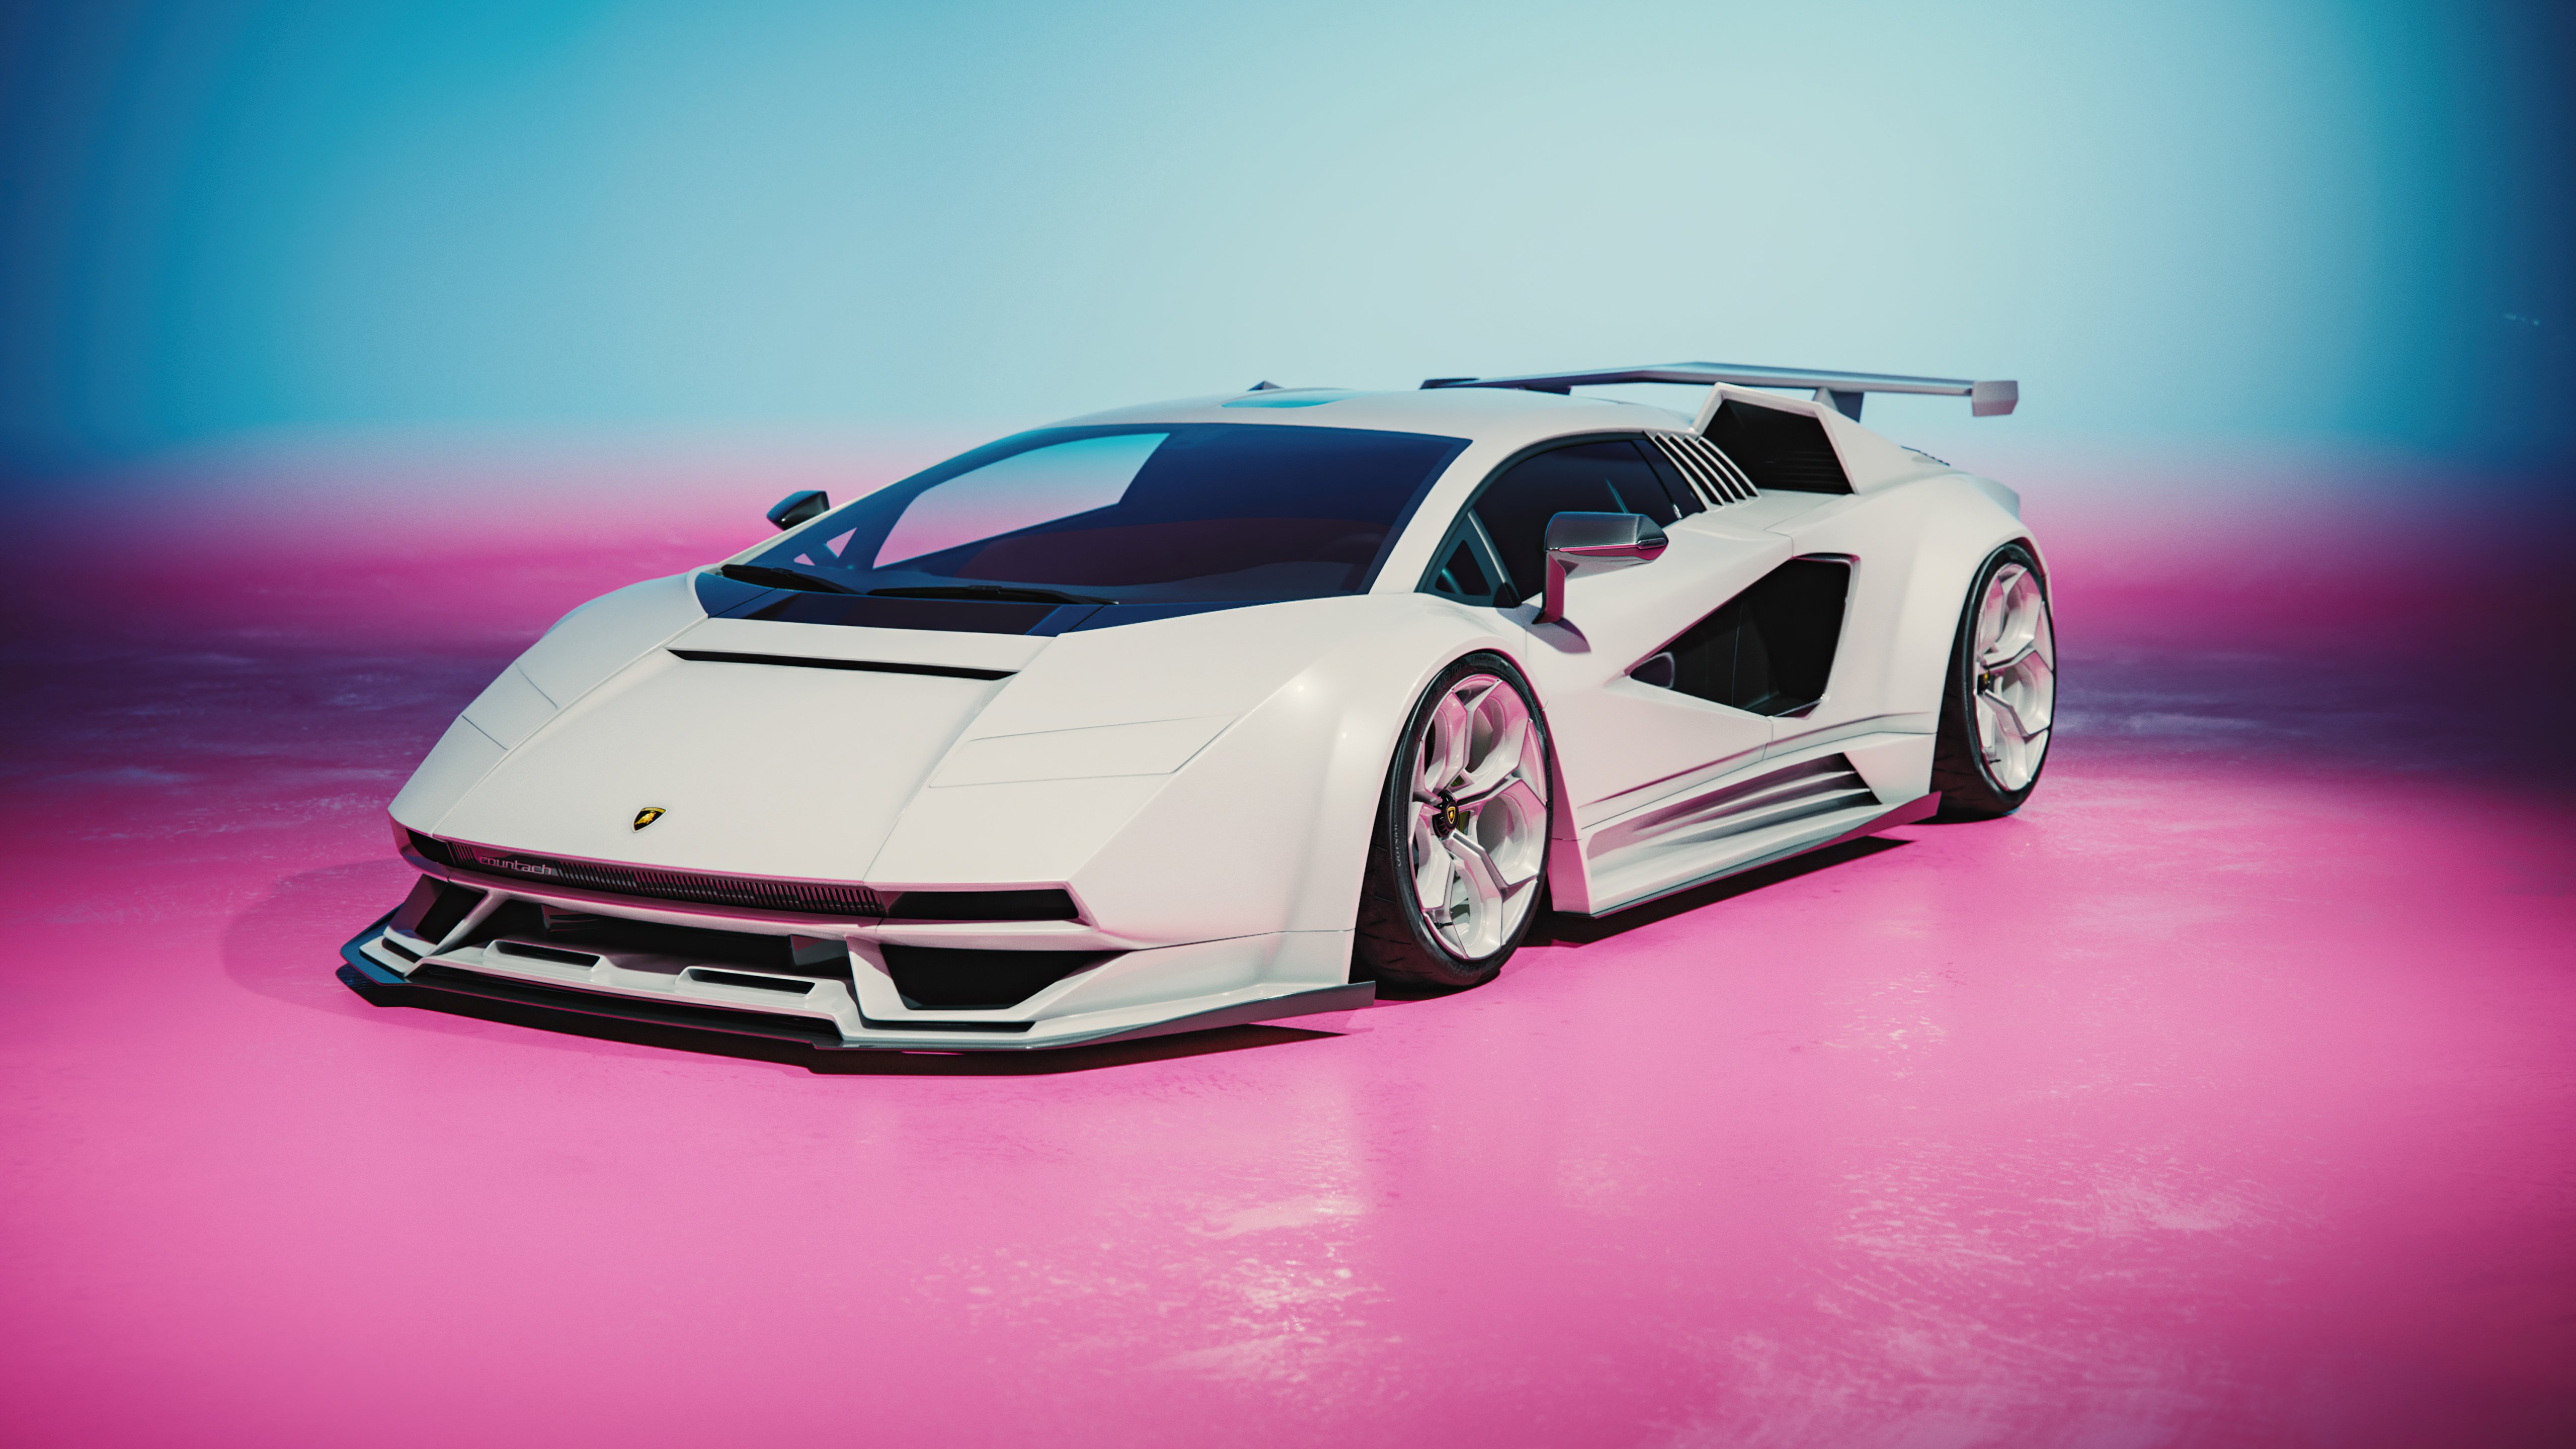 Fondos de pantalla Lamborghini Countach concept